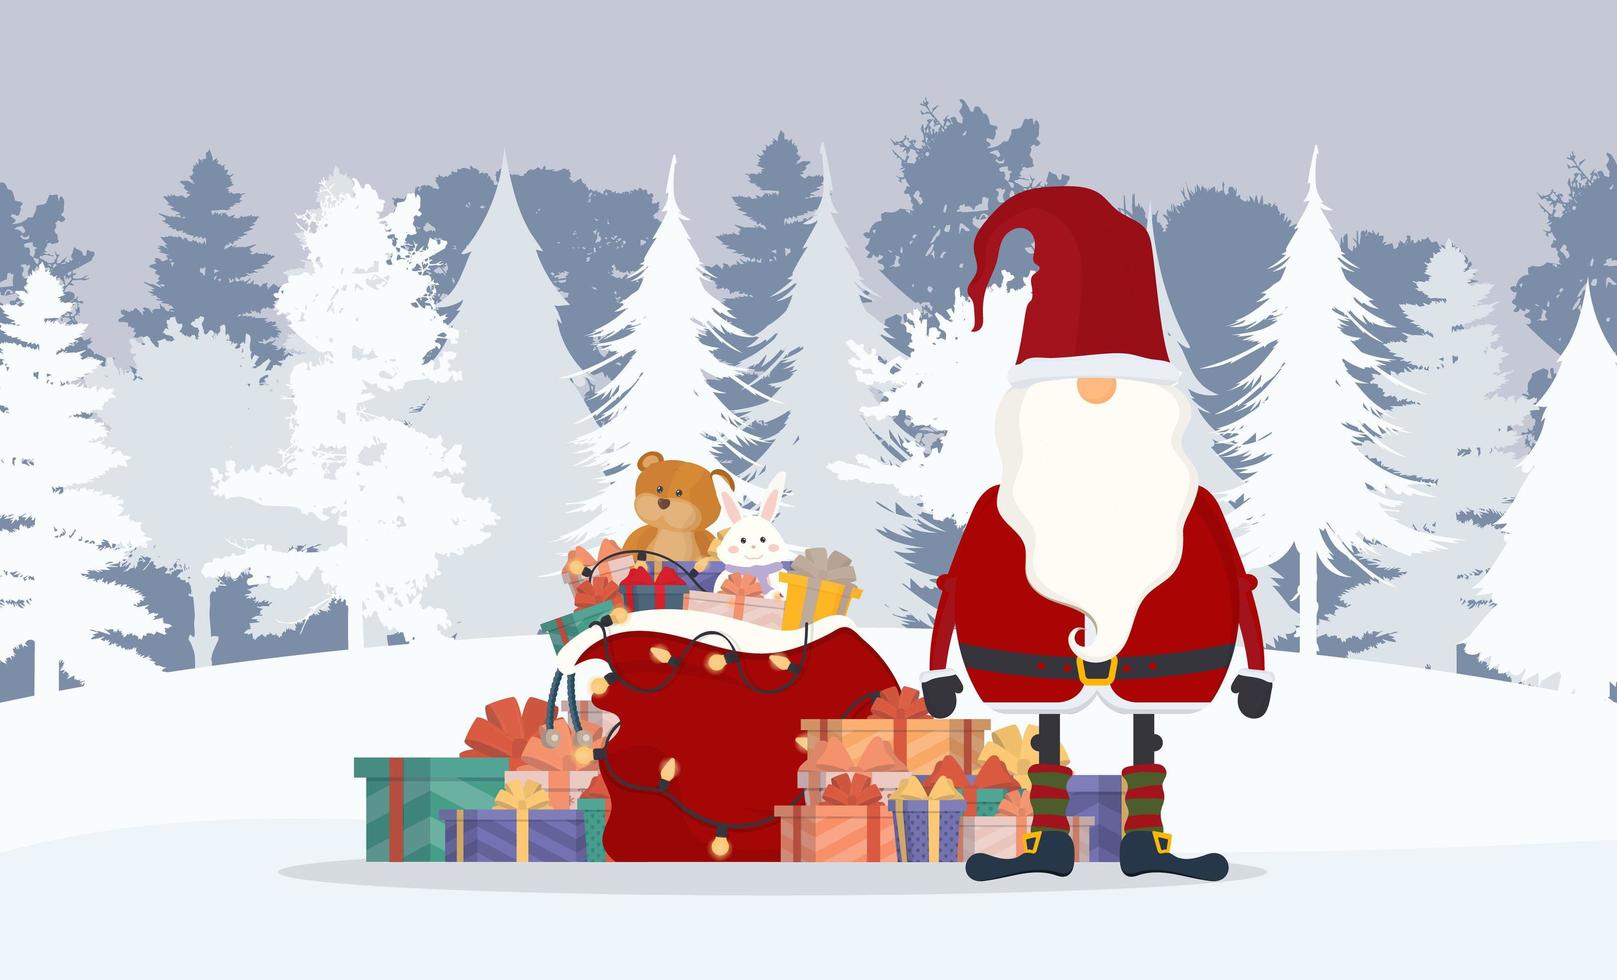 Weihnachtsmann im Winterwald. ein Berg von Geschenken, eine rote Tasche, ein alter Mann mit weißem Bart im roten Anzug. Weihnachtskarte. Vektor-Illustration vektor